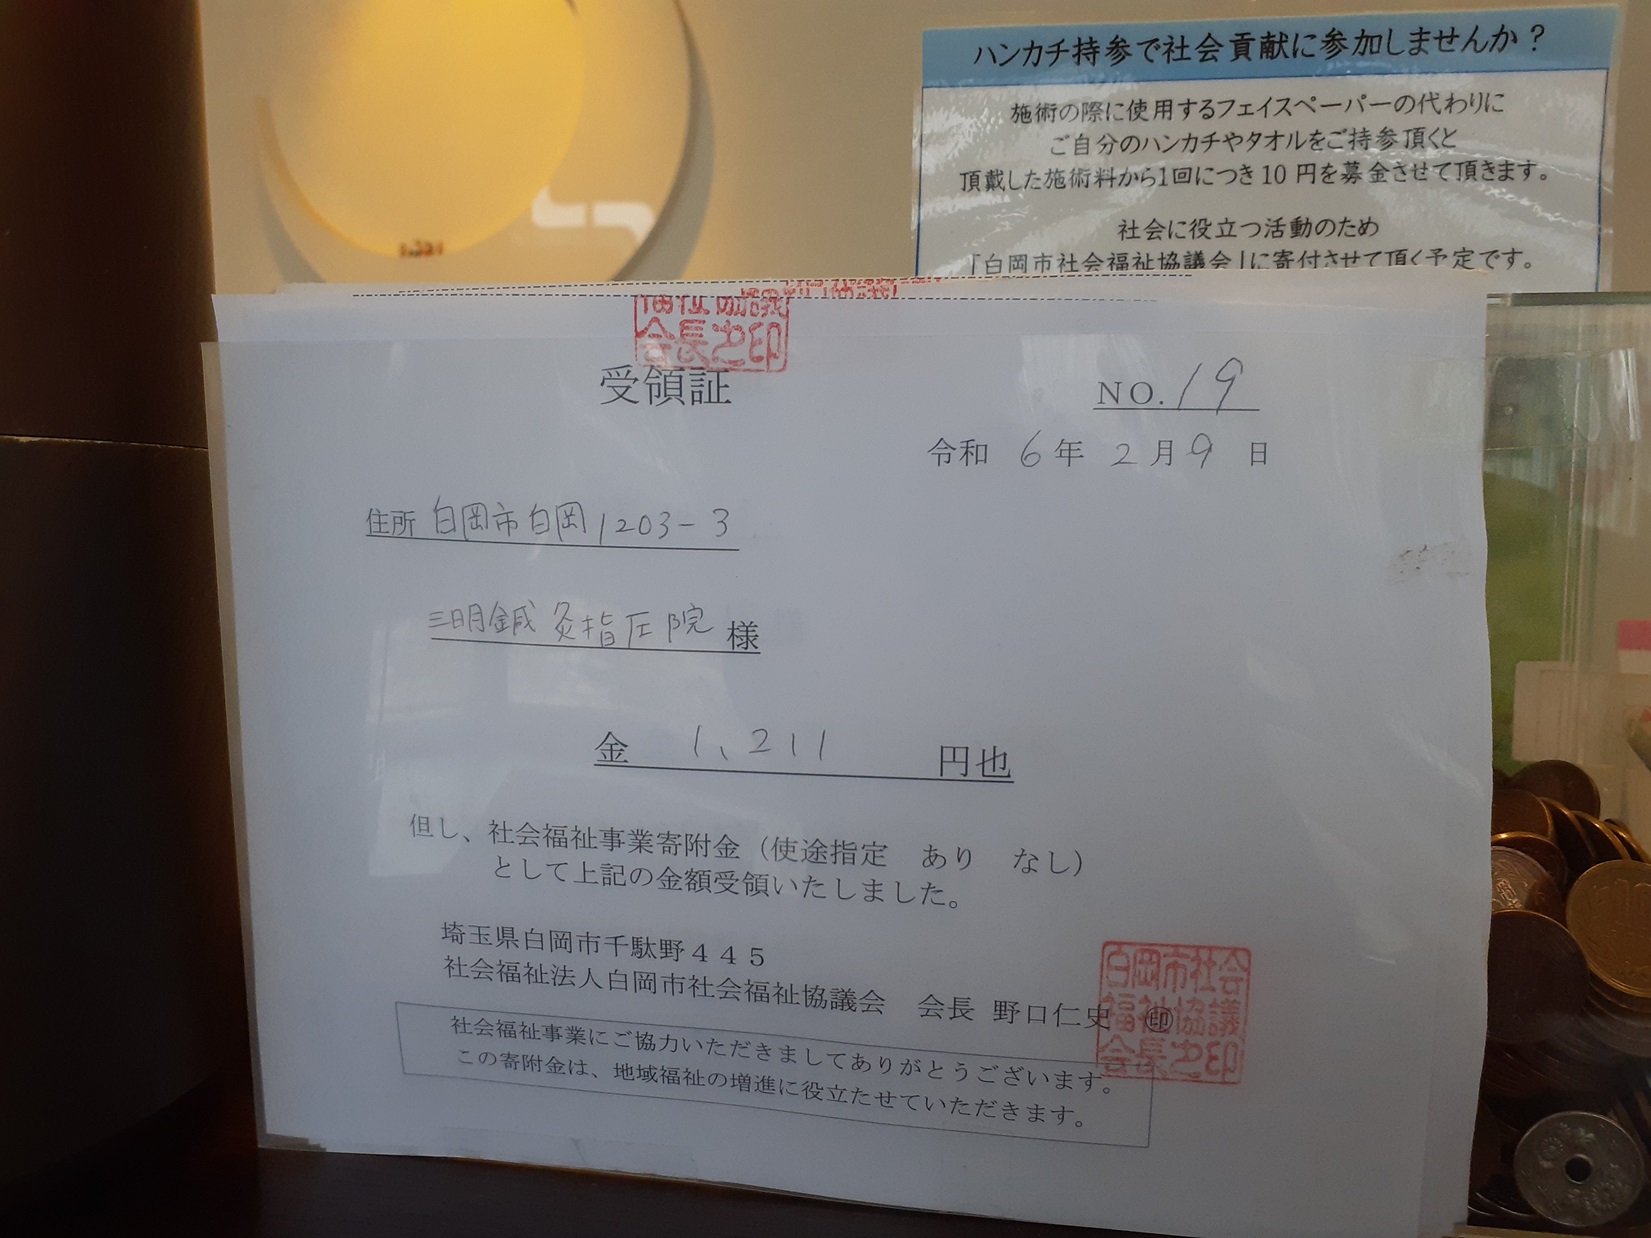 社会福祉協議会に１，２１１円を寄附させていただきました。